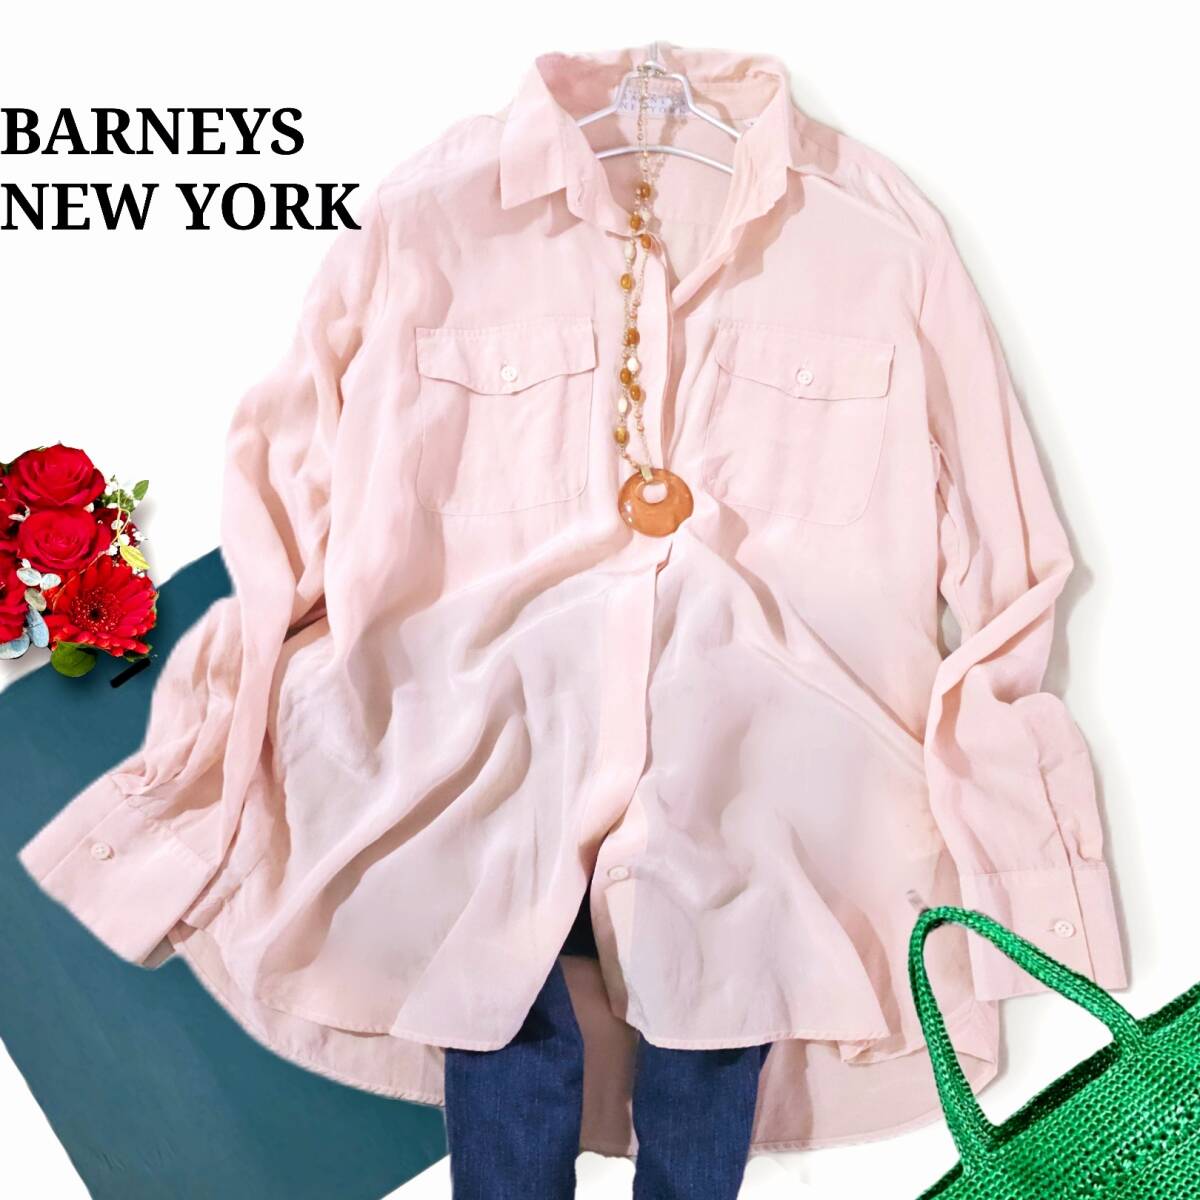  превосходный товар шелк 100% BARNEYS NEW YORK розовый бежевый соотношение крыло блуза рубашка Италия производства 5 десять тысяч 